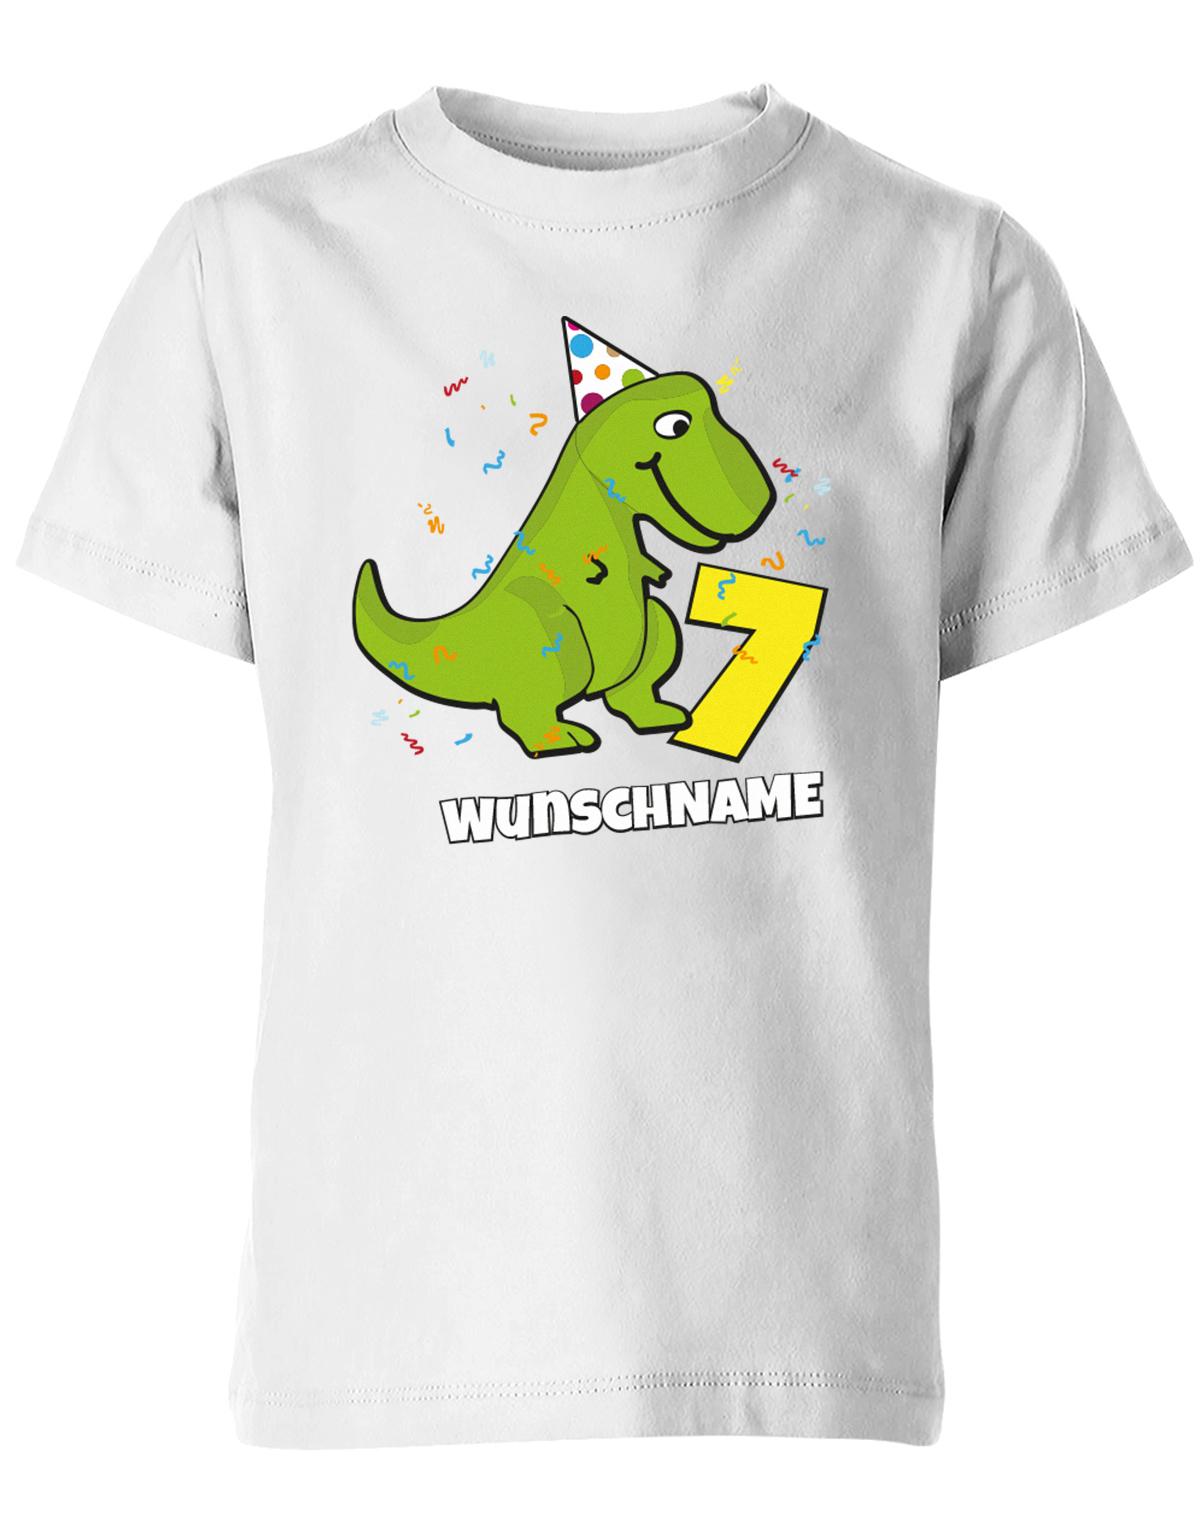 ich-bin-7-Dinosaurier-t-rex-wunschname-geburtstag-kinder-shirt-weiss